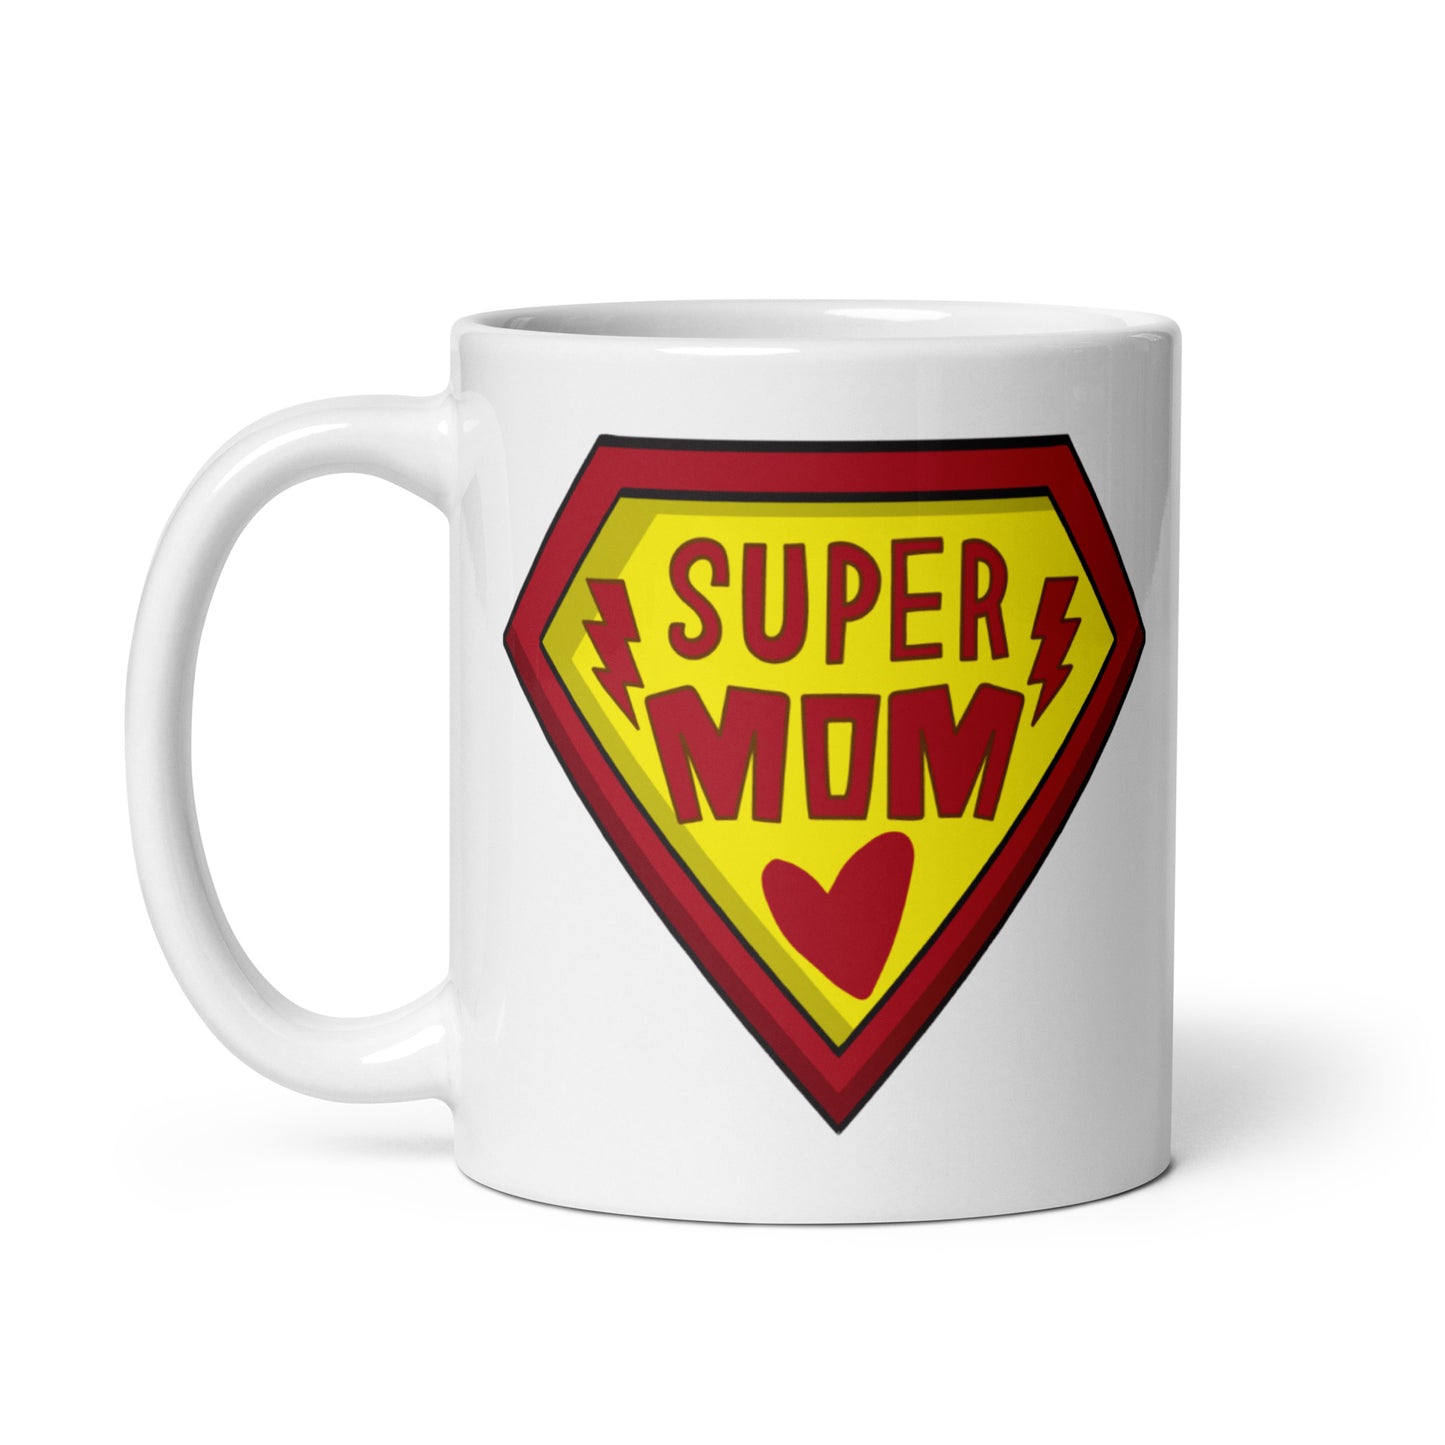 Super Mom - White Glossy Mug - Gift - Mother's Day - Birthday